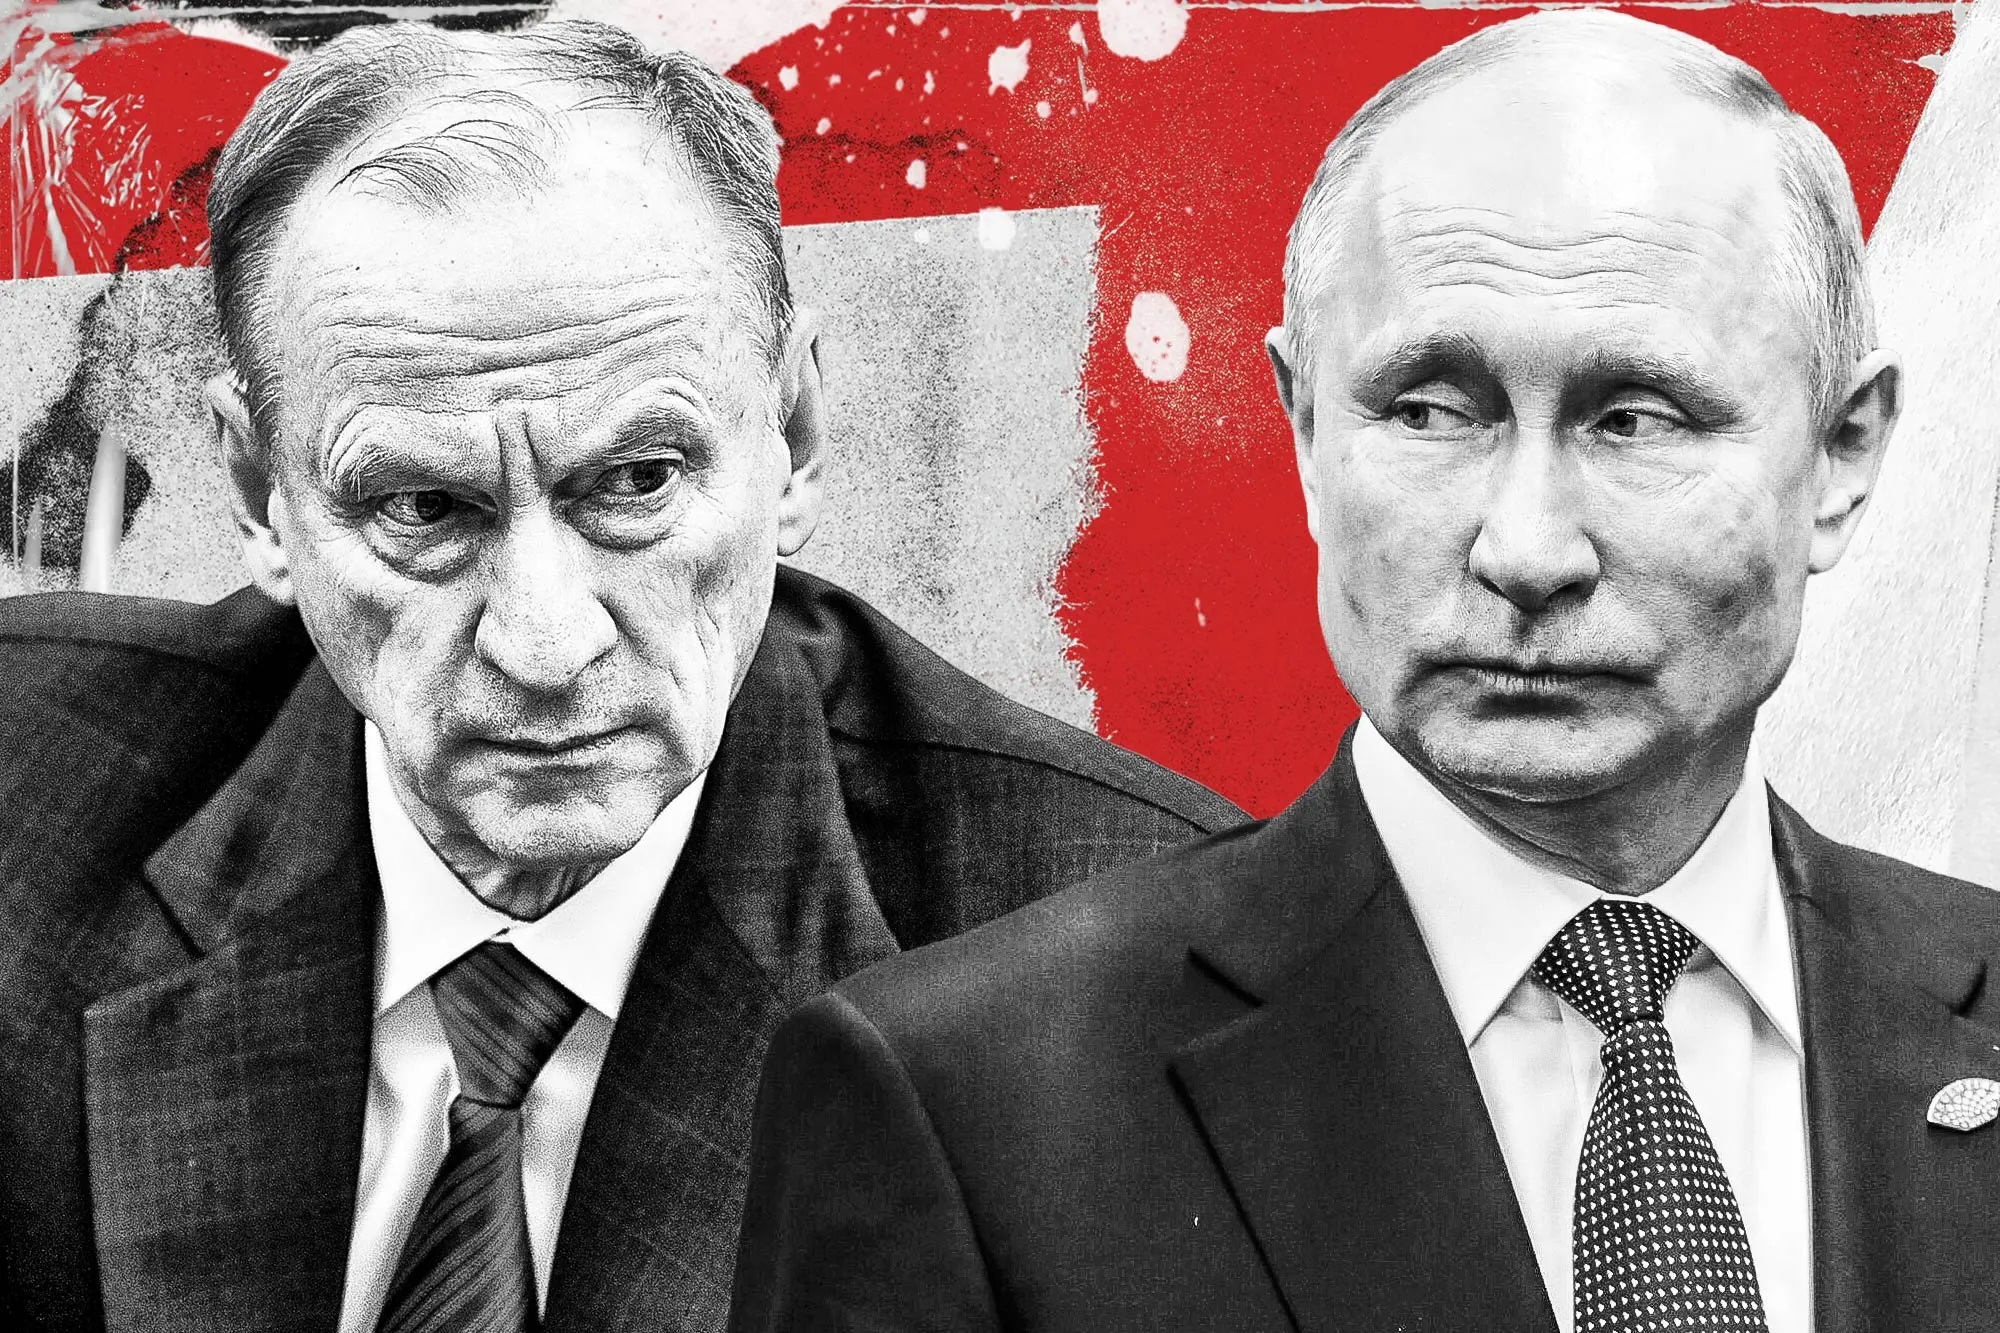 Chân dung Nikolai Patrushev: Trợ lý thân tín nhất được xem là 'cánh tay phải' của Tổng thống Putin - Ảnh 1.